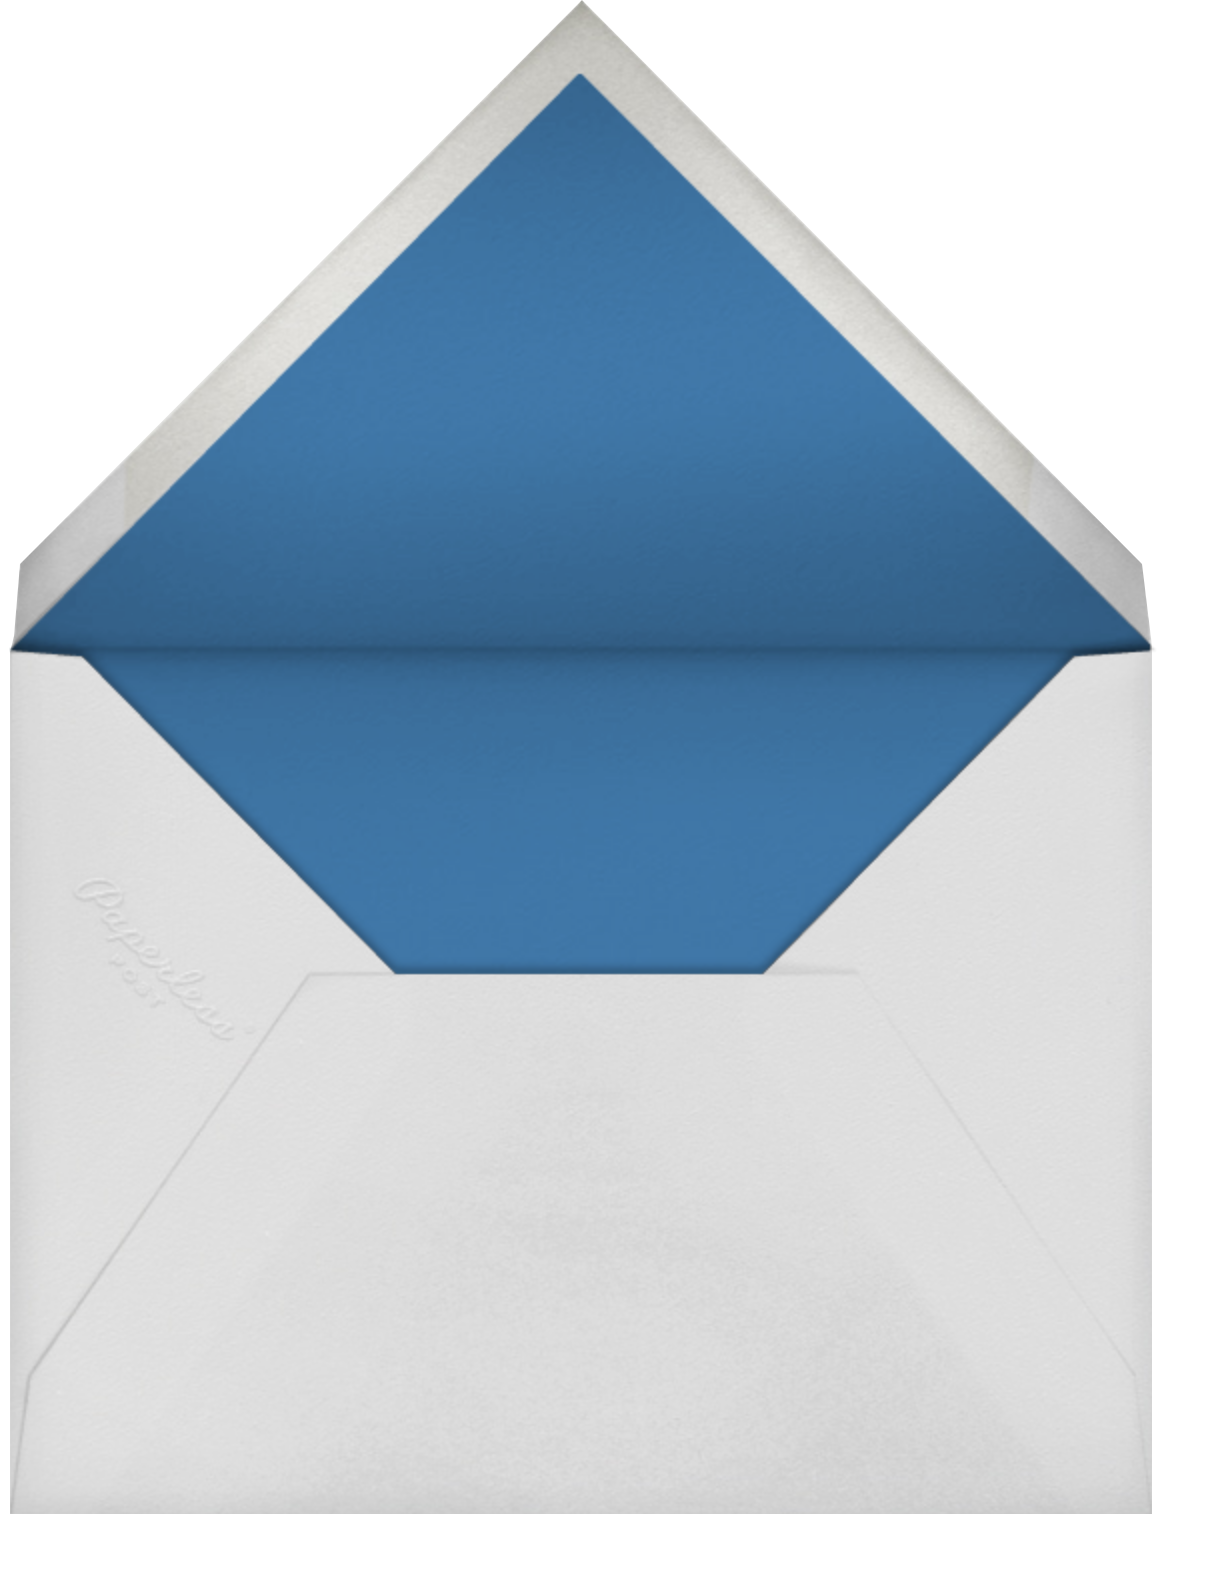 Gold Menorah - Amazon - Paperless Post - Envelope